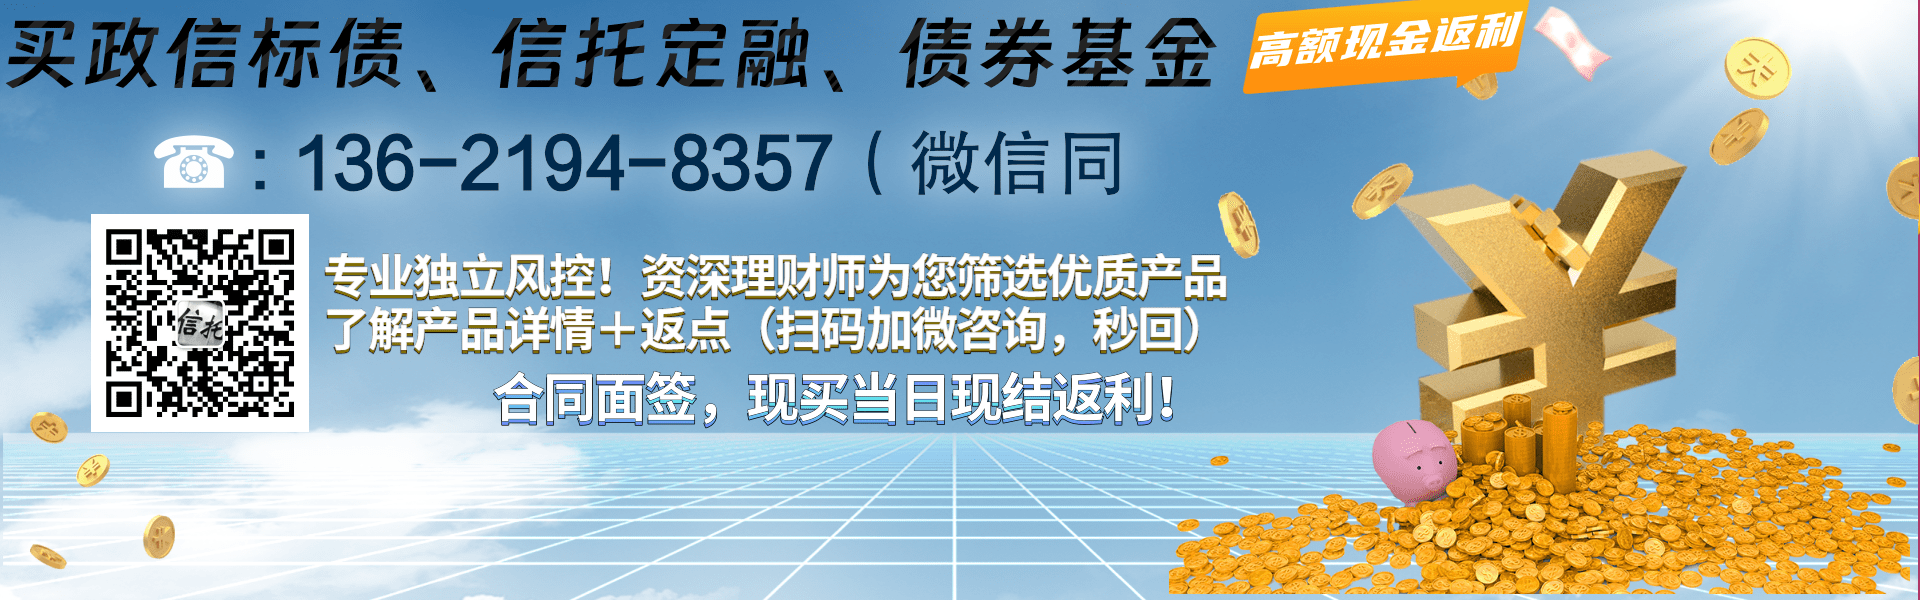 央企信托-820号江苏泰州非标集合资金信托计划